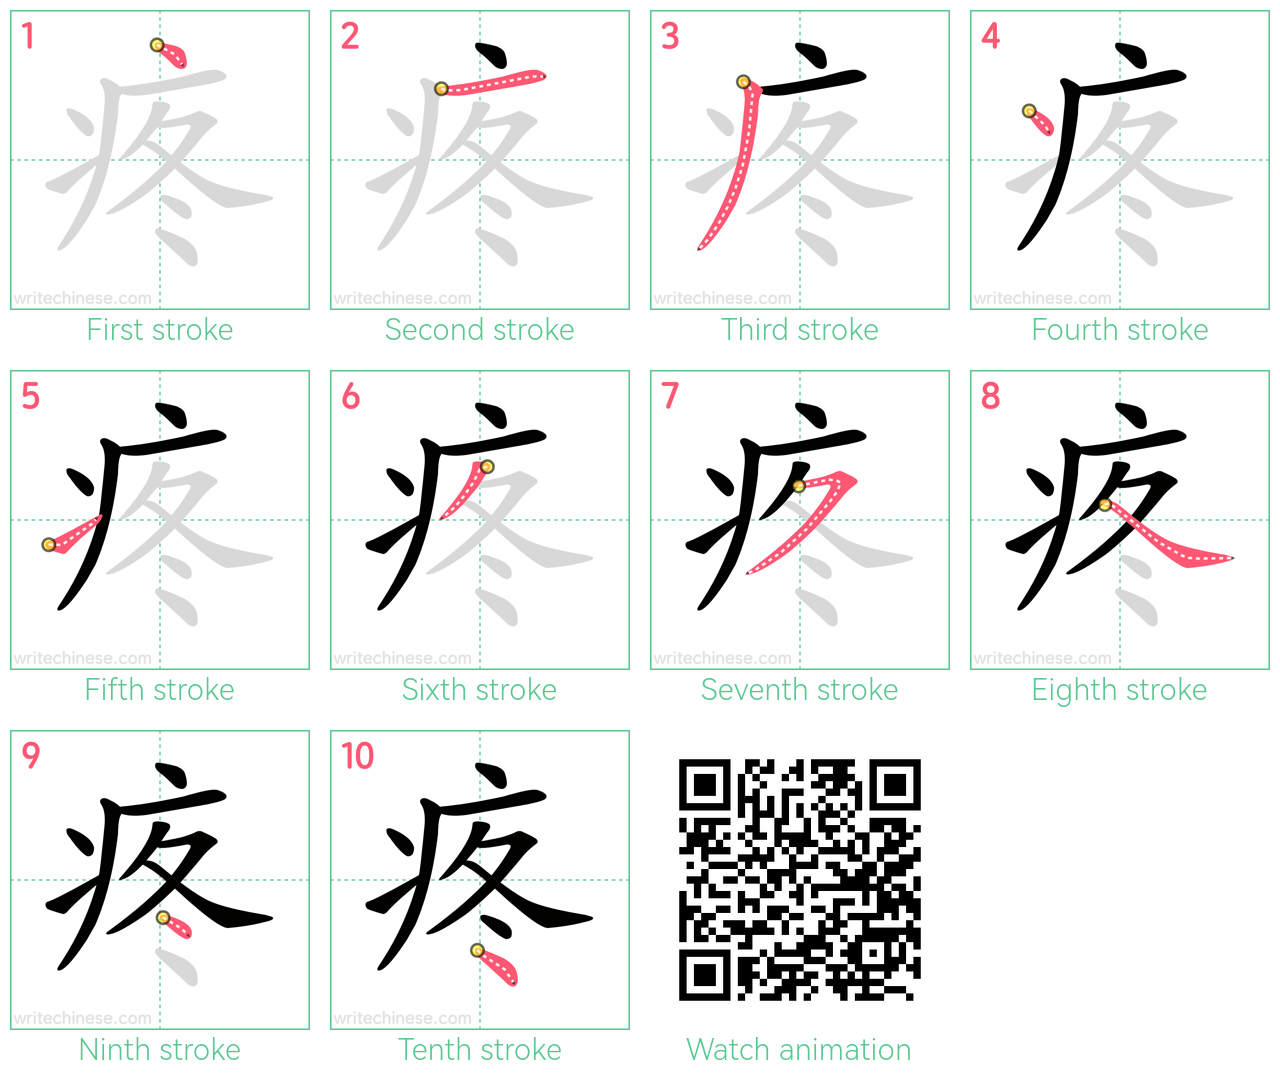 疼 step-by-step stroke order diagrams